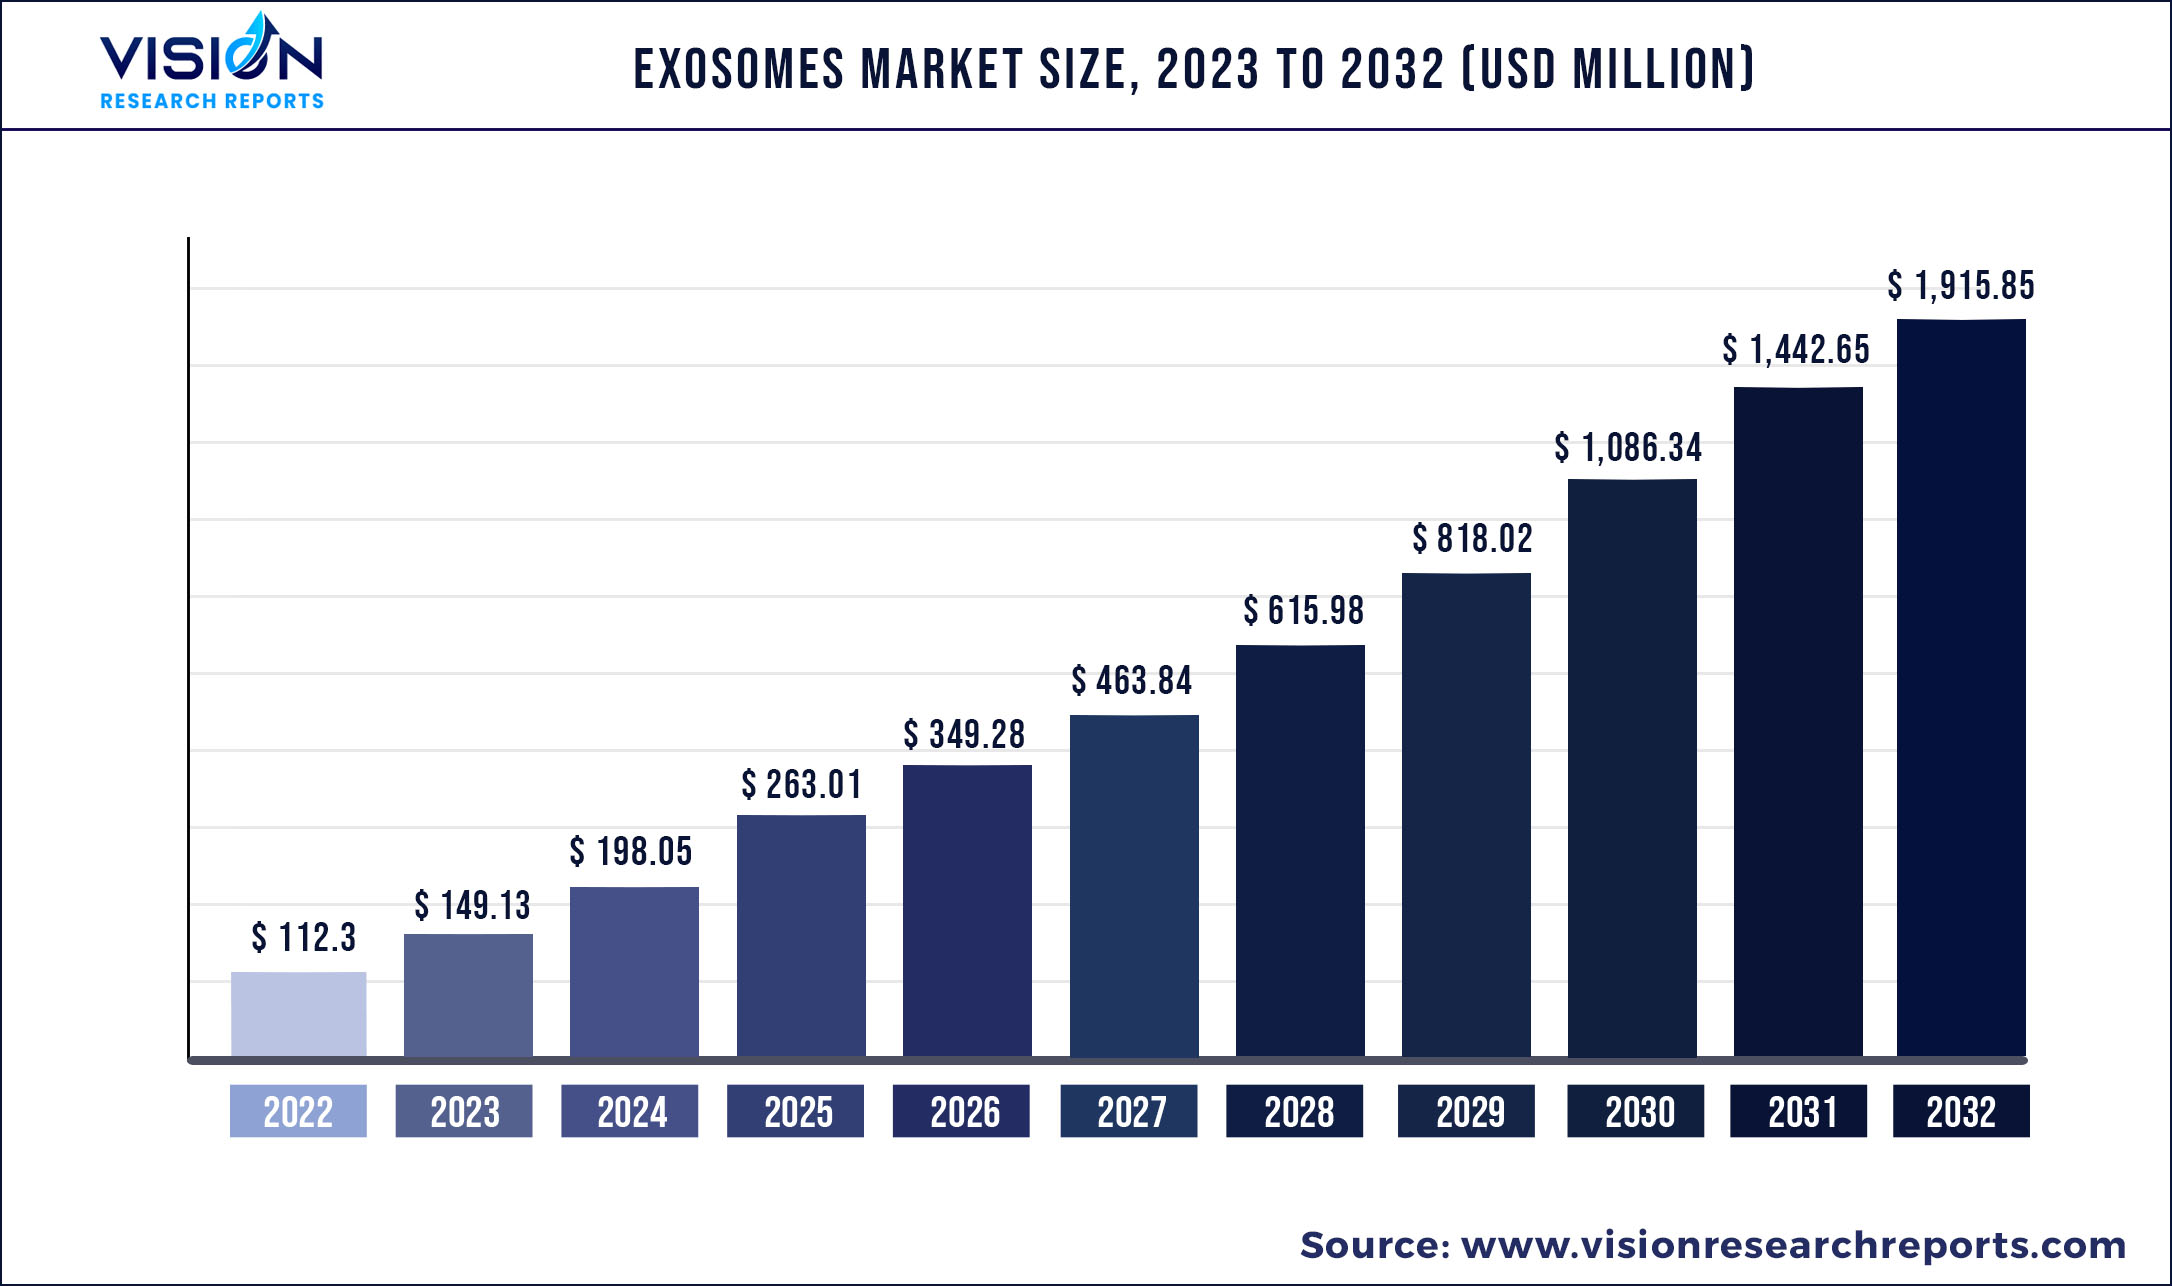 Exosomes Market Size 2023 to 2032